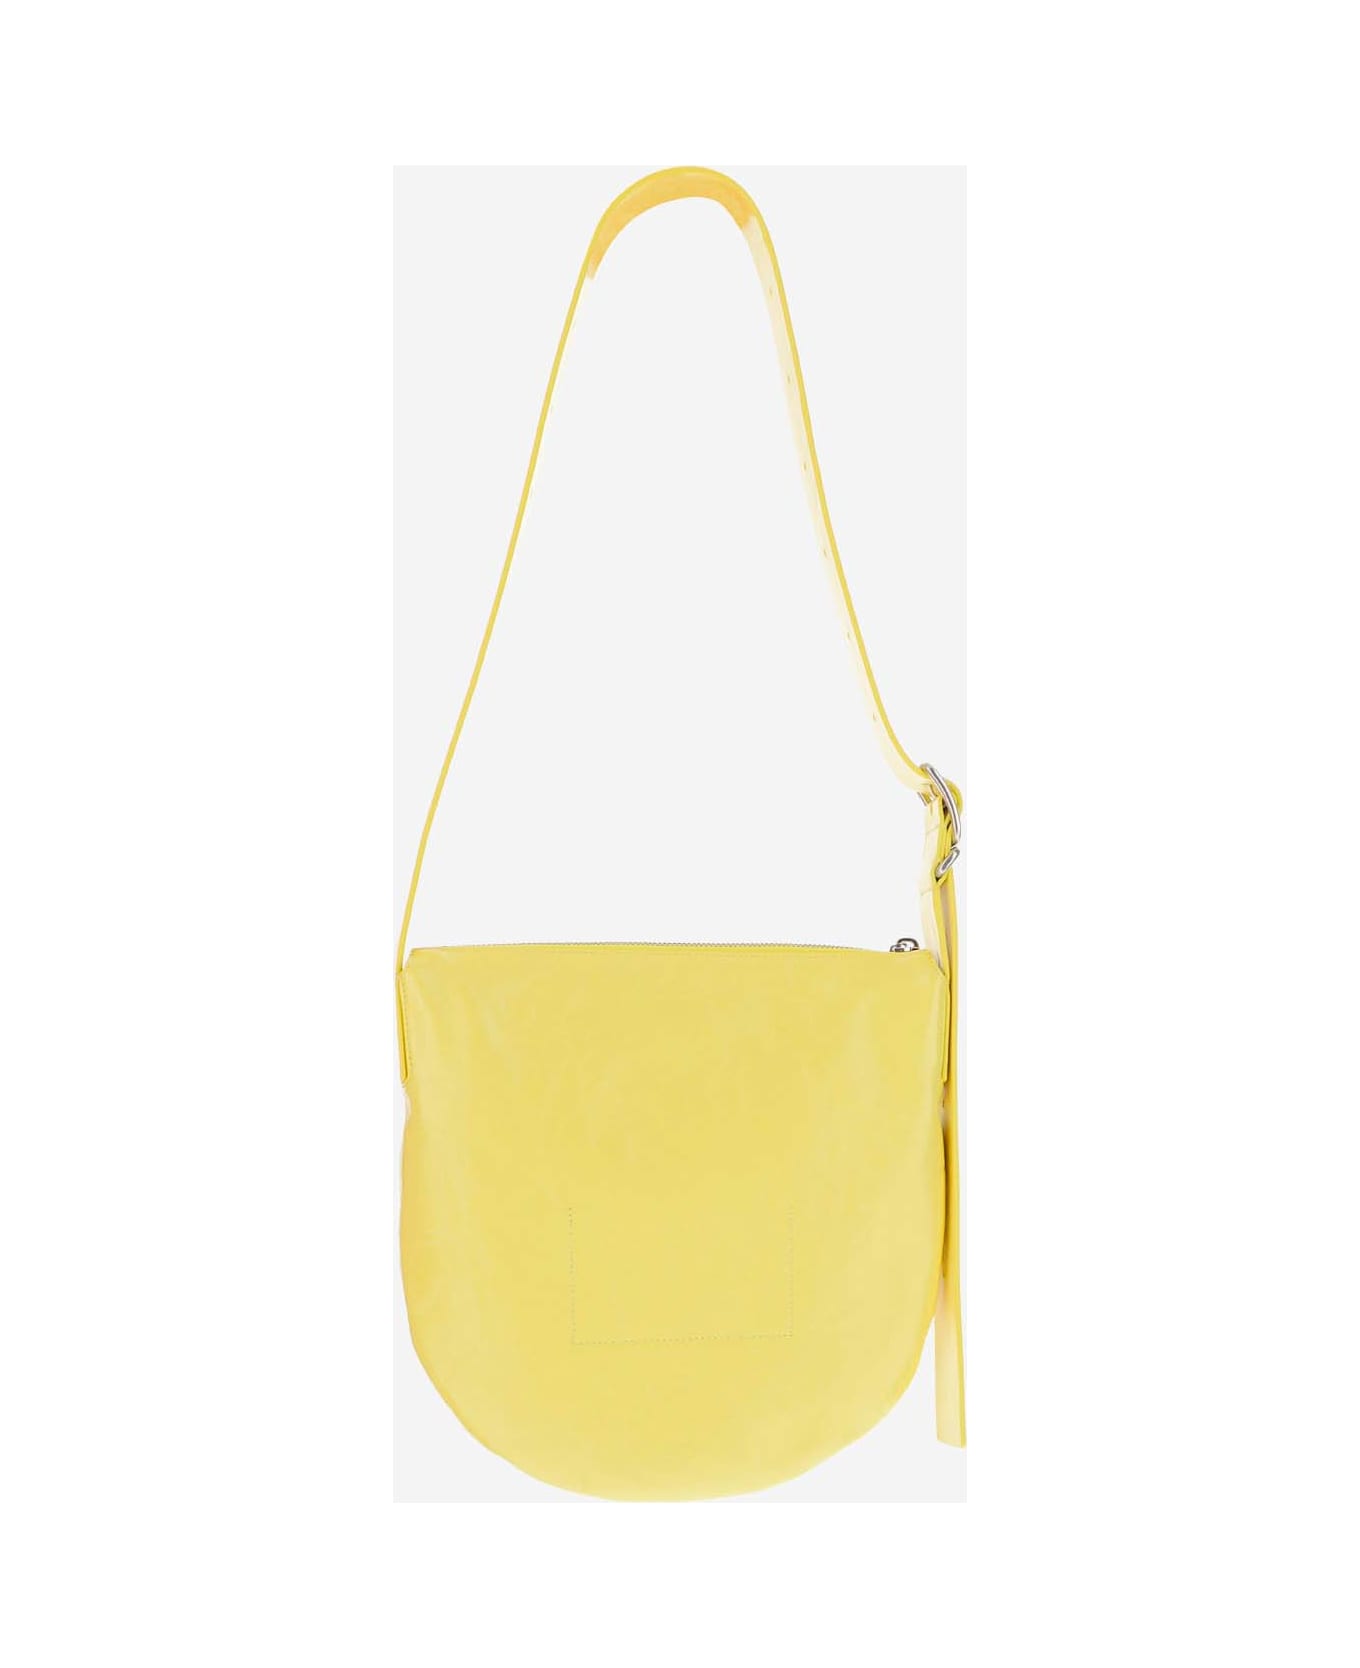 Jil Sander Crinkled Leather Small Shoulder Bag - Yellow